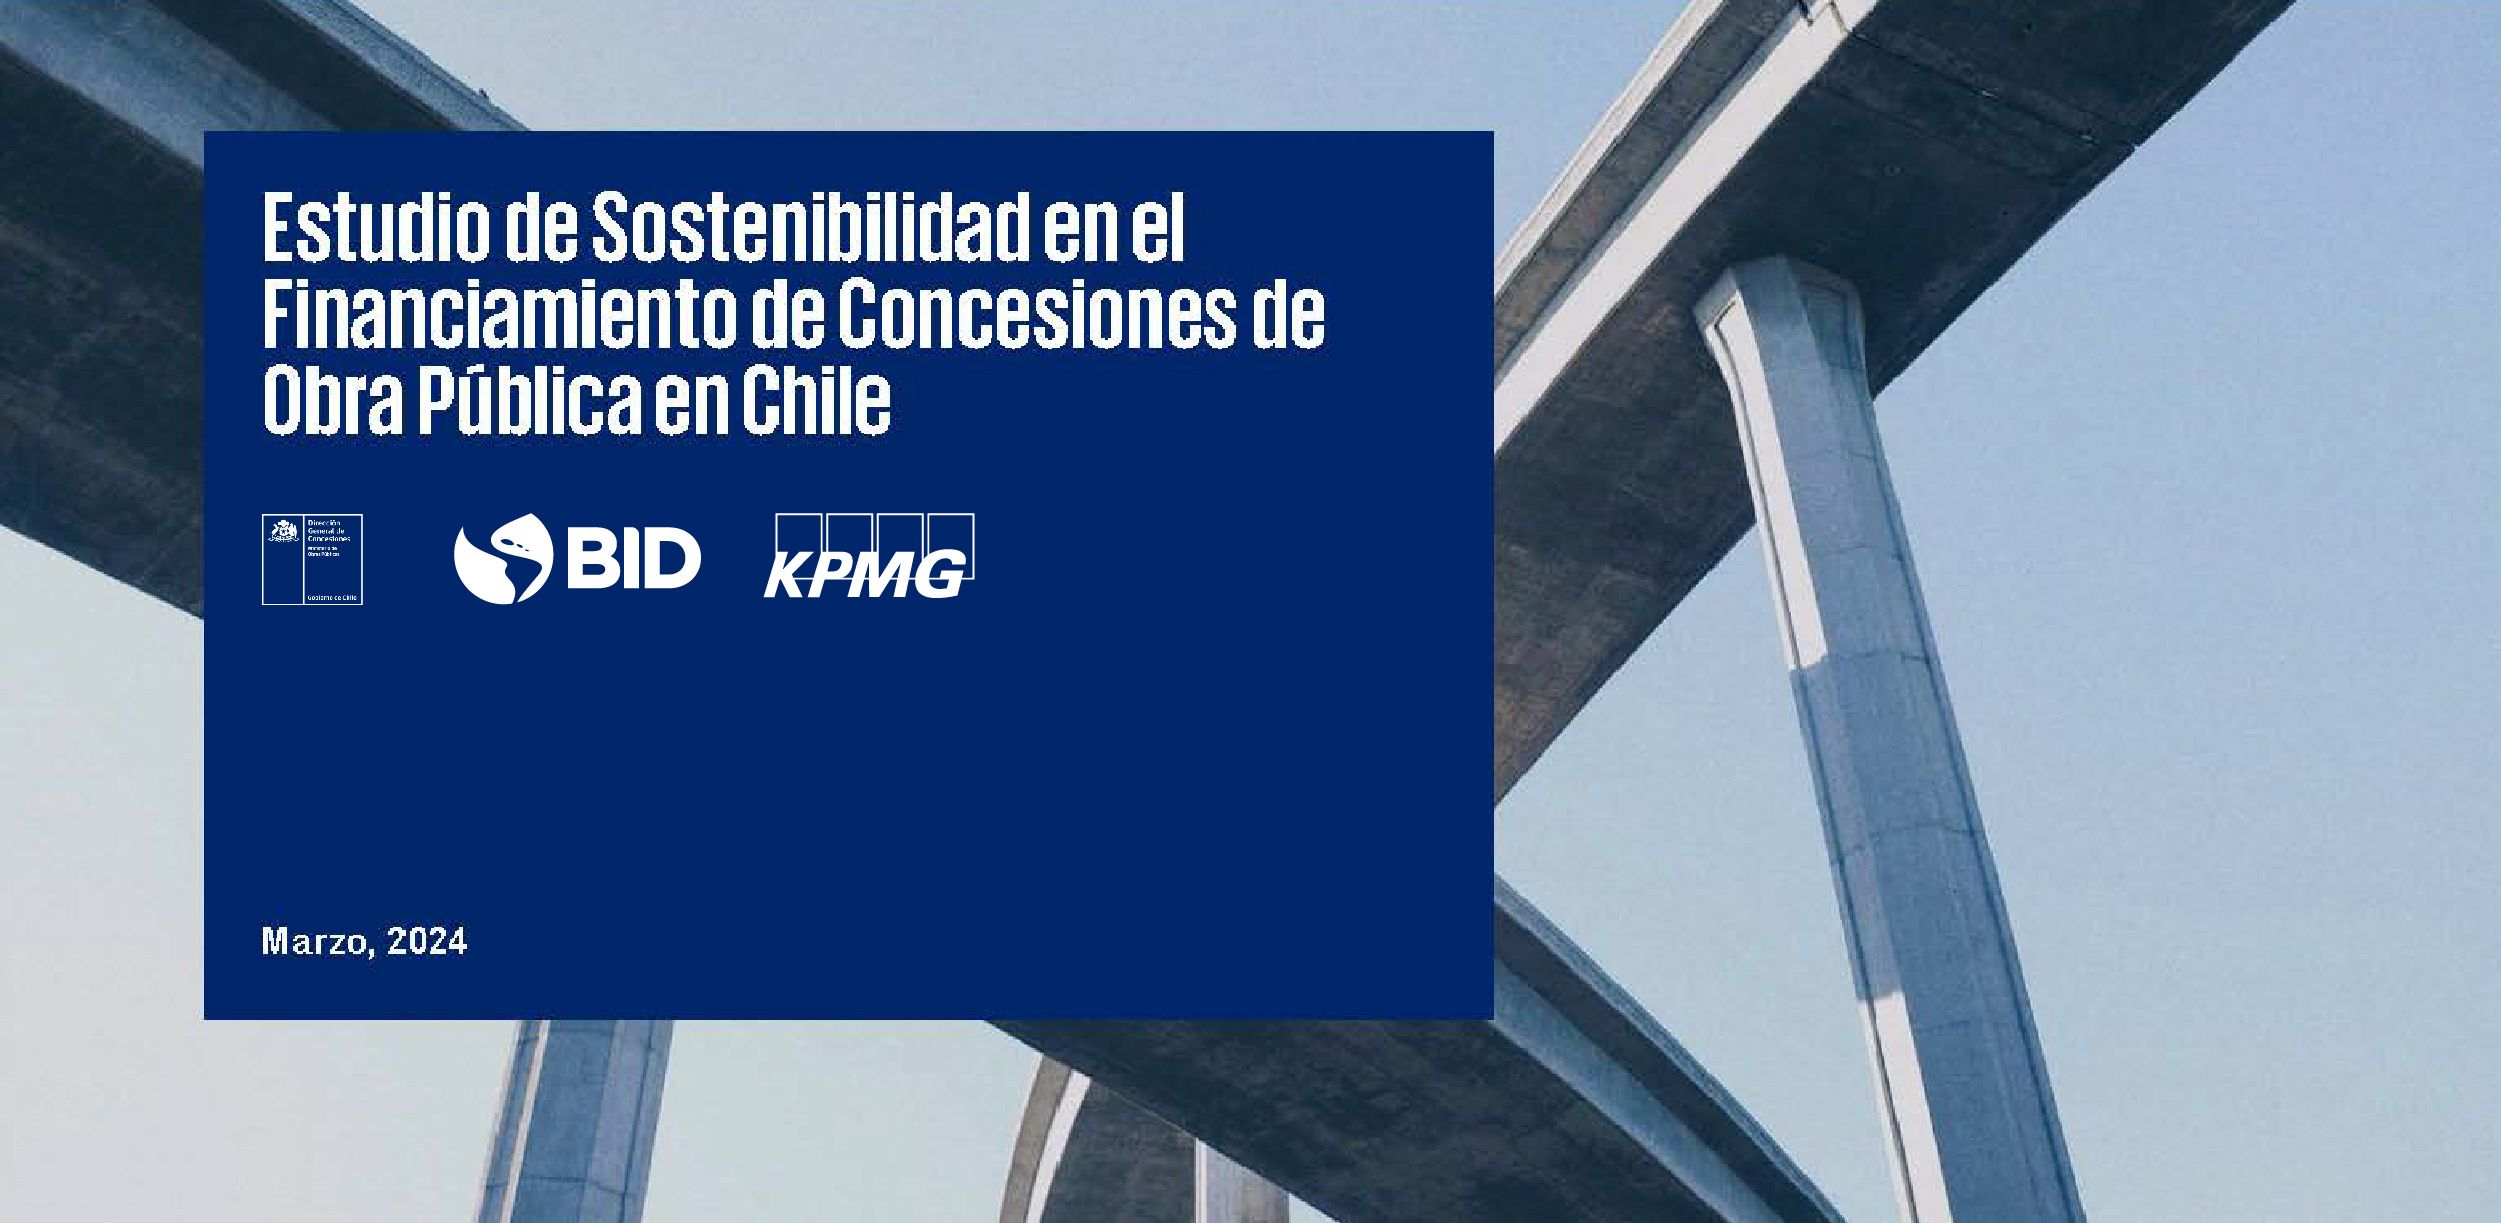 Asociaciones Público-Privadas en Chile: desde la preparación hasta el financiamiento de proyectos sostenibles